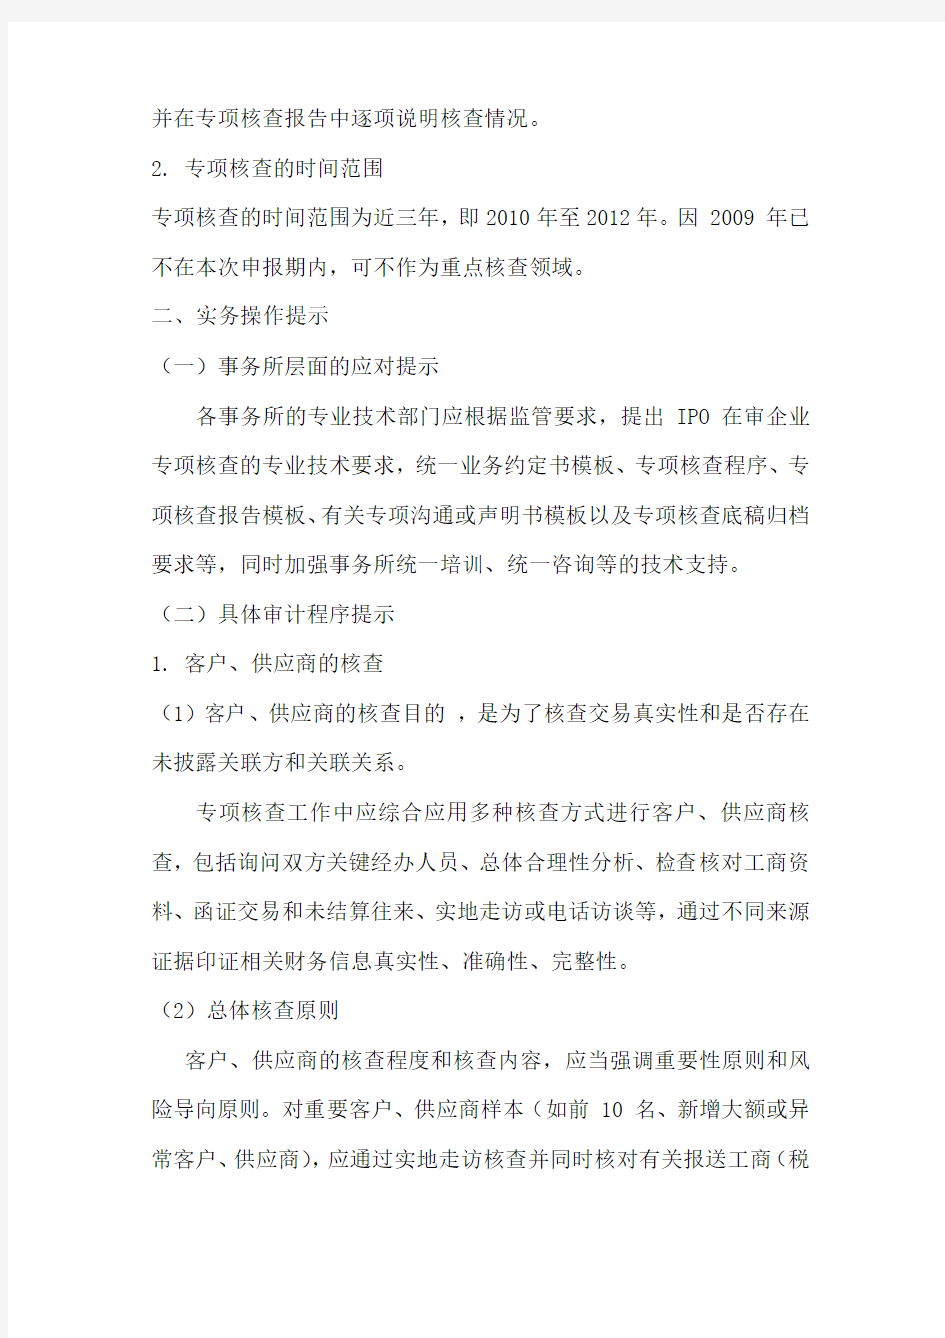 北京注册会计师协会专家委员会专家提示第1号